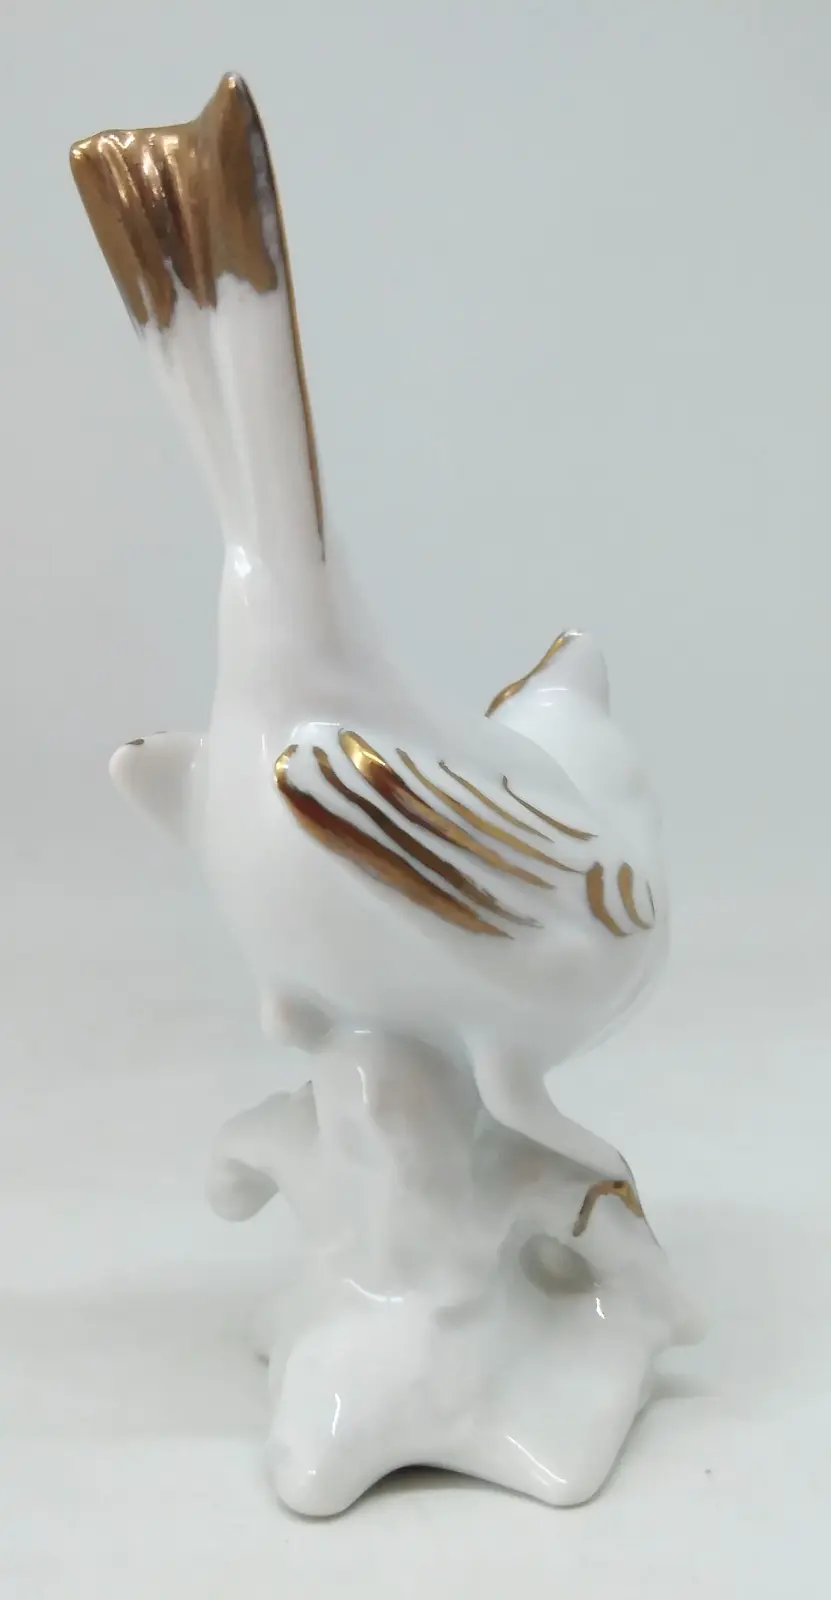 Figurka porcelanowa 